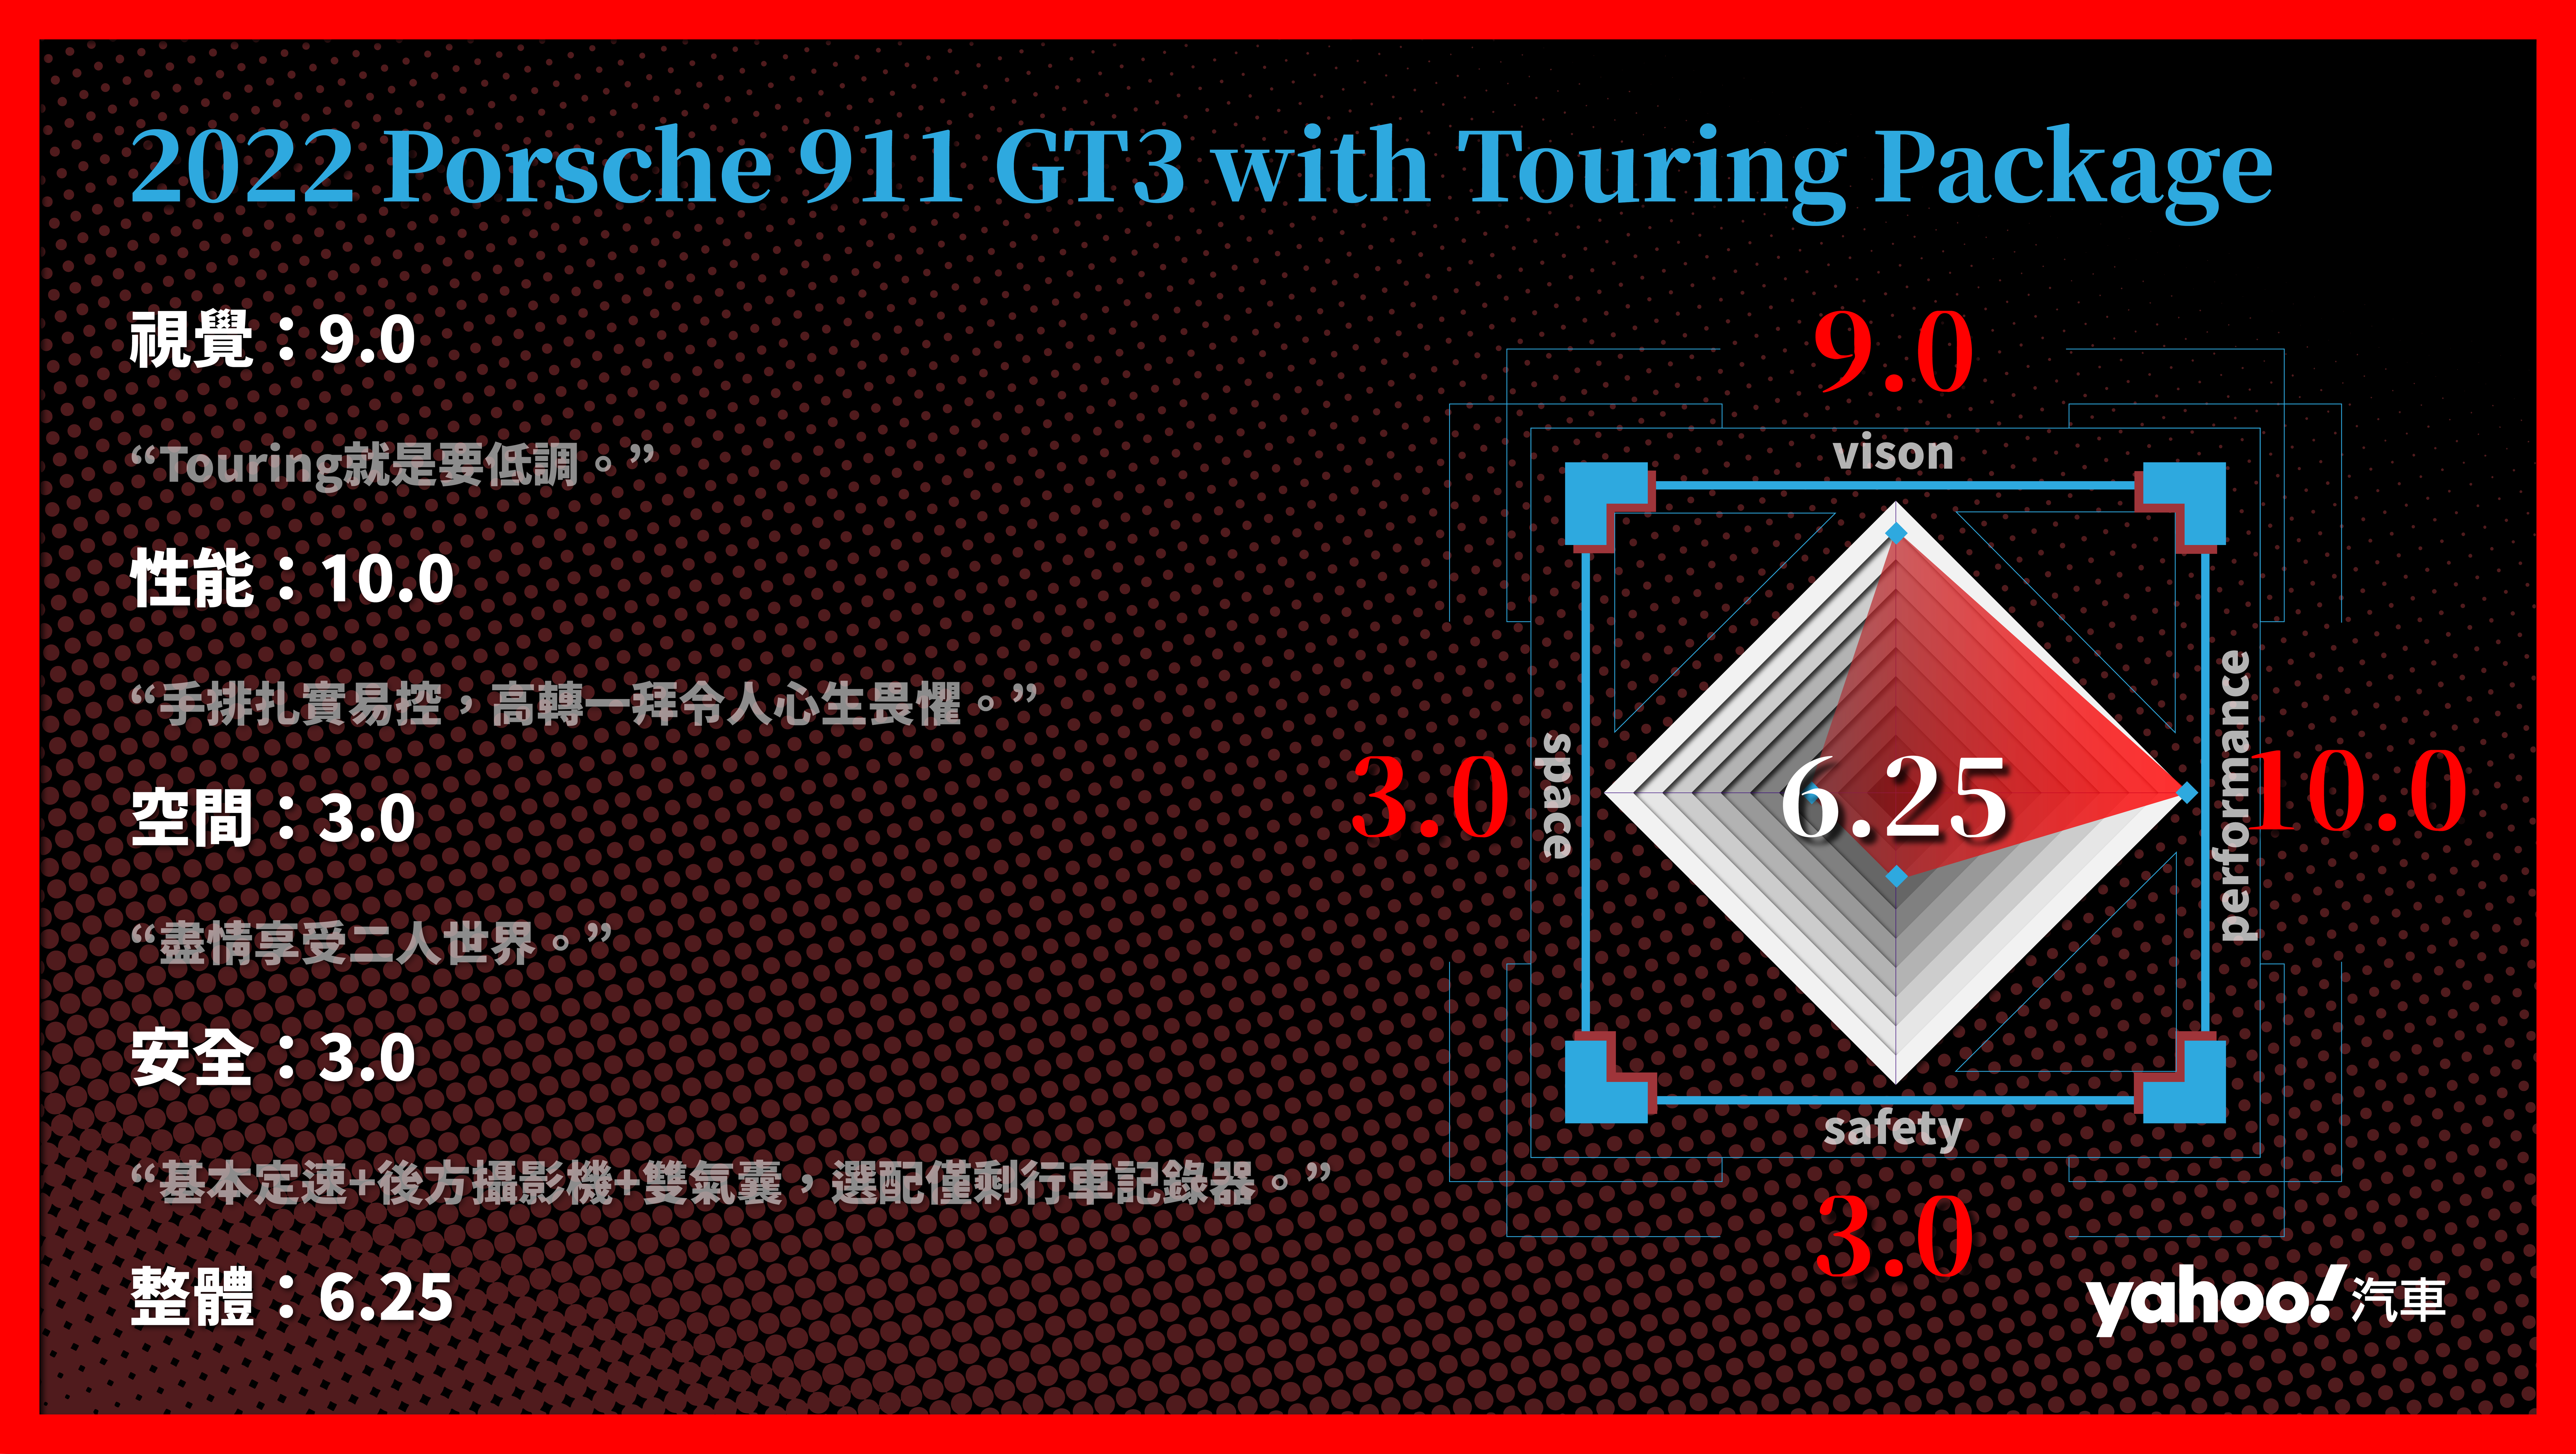 第5 & 6 & 7名：Porsche 911 GT3 with Touring Package 分項評比